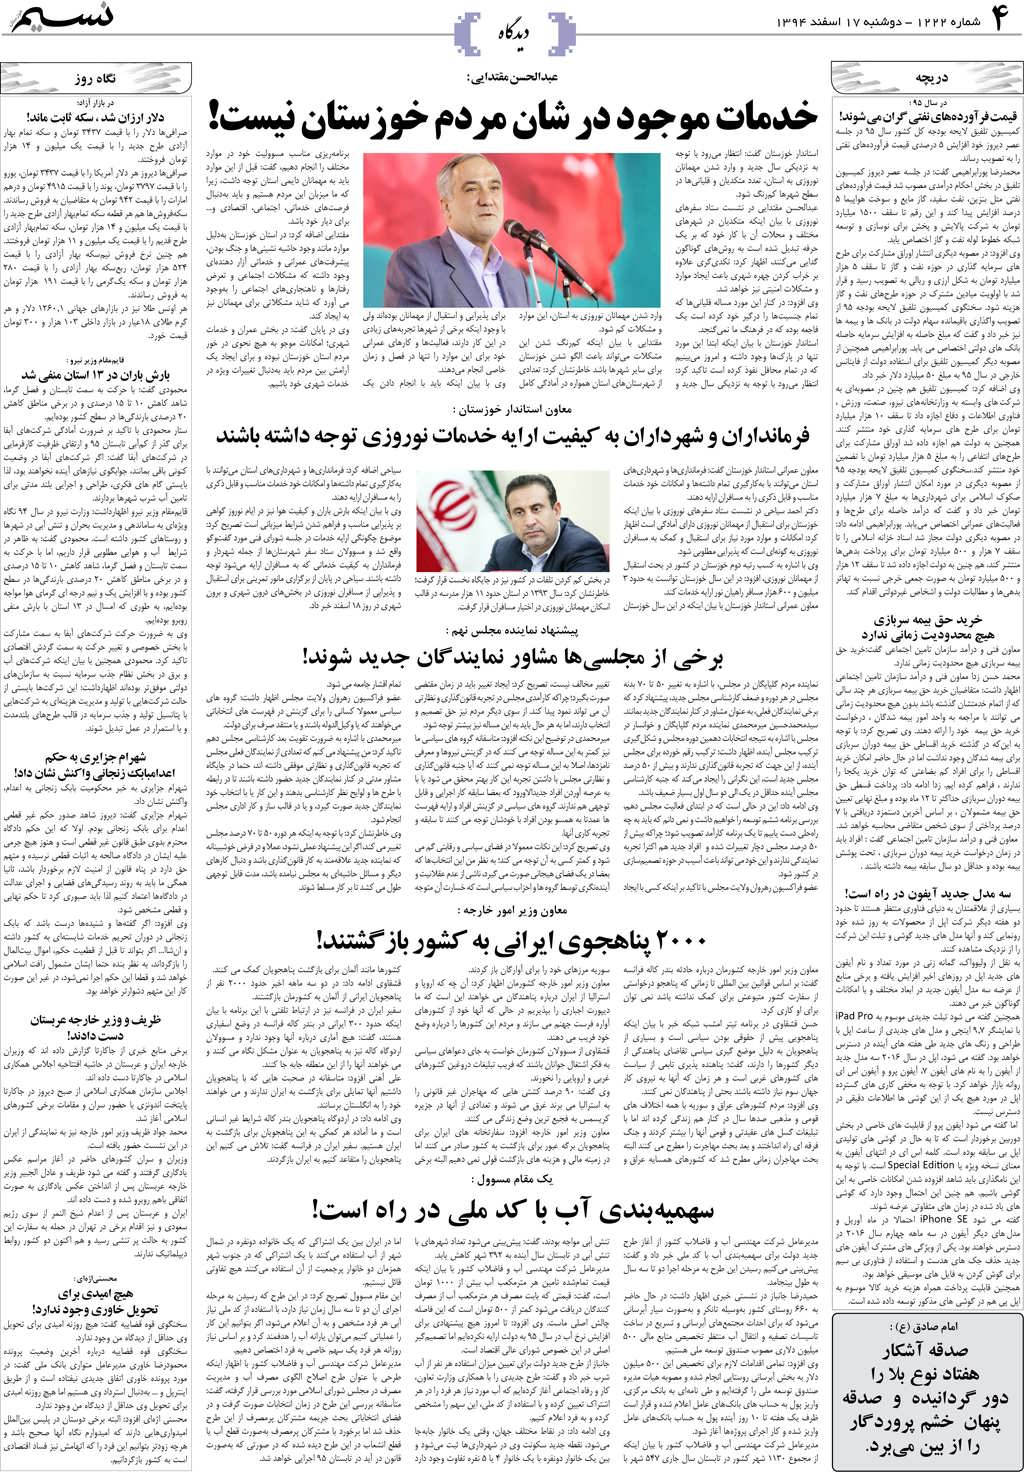 صفحه دیدگاه روزنامه نسیم شماره 1222